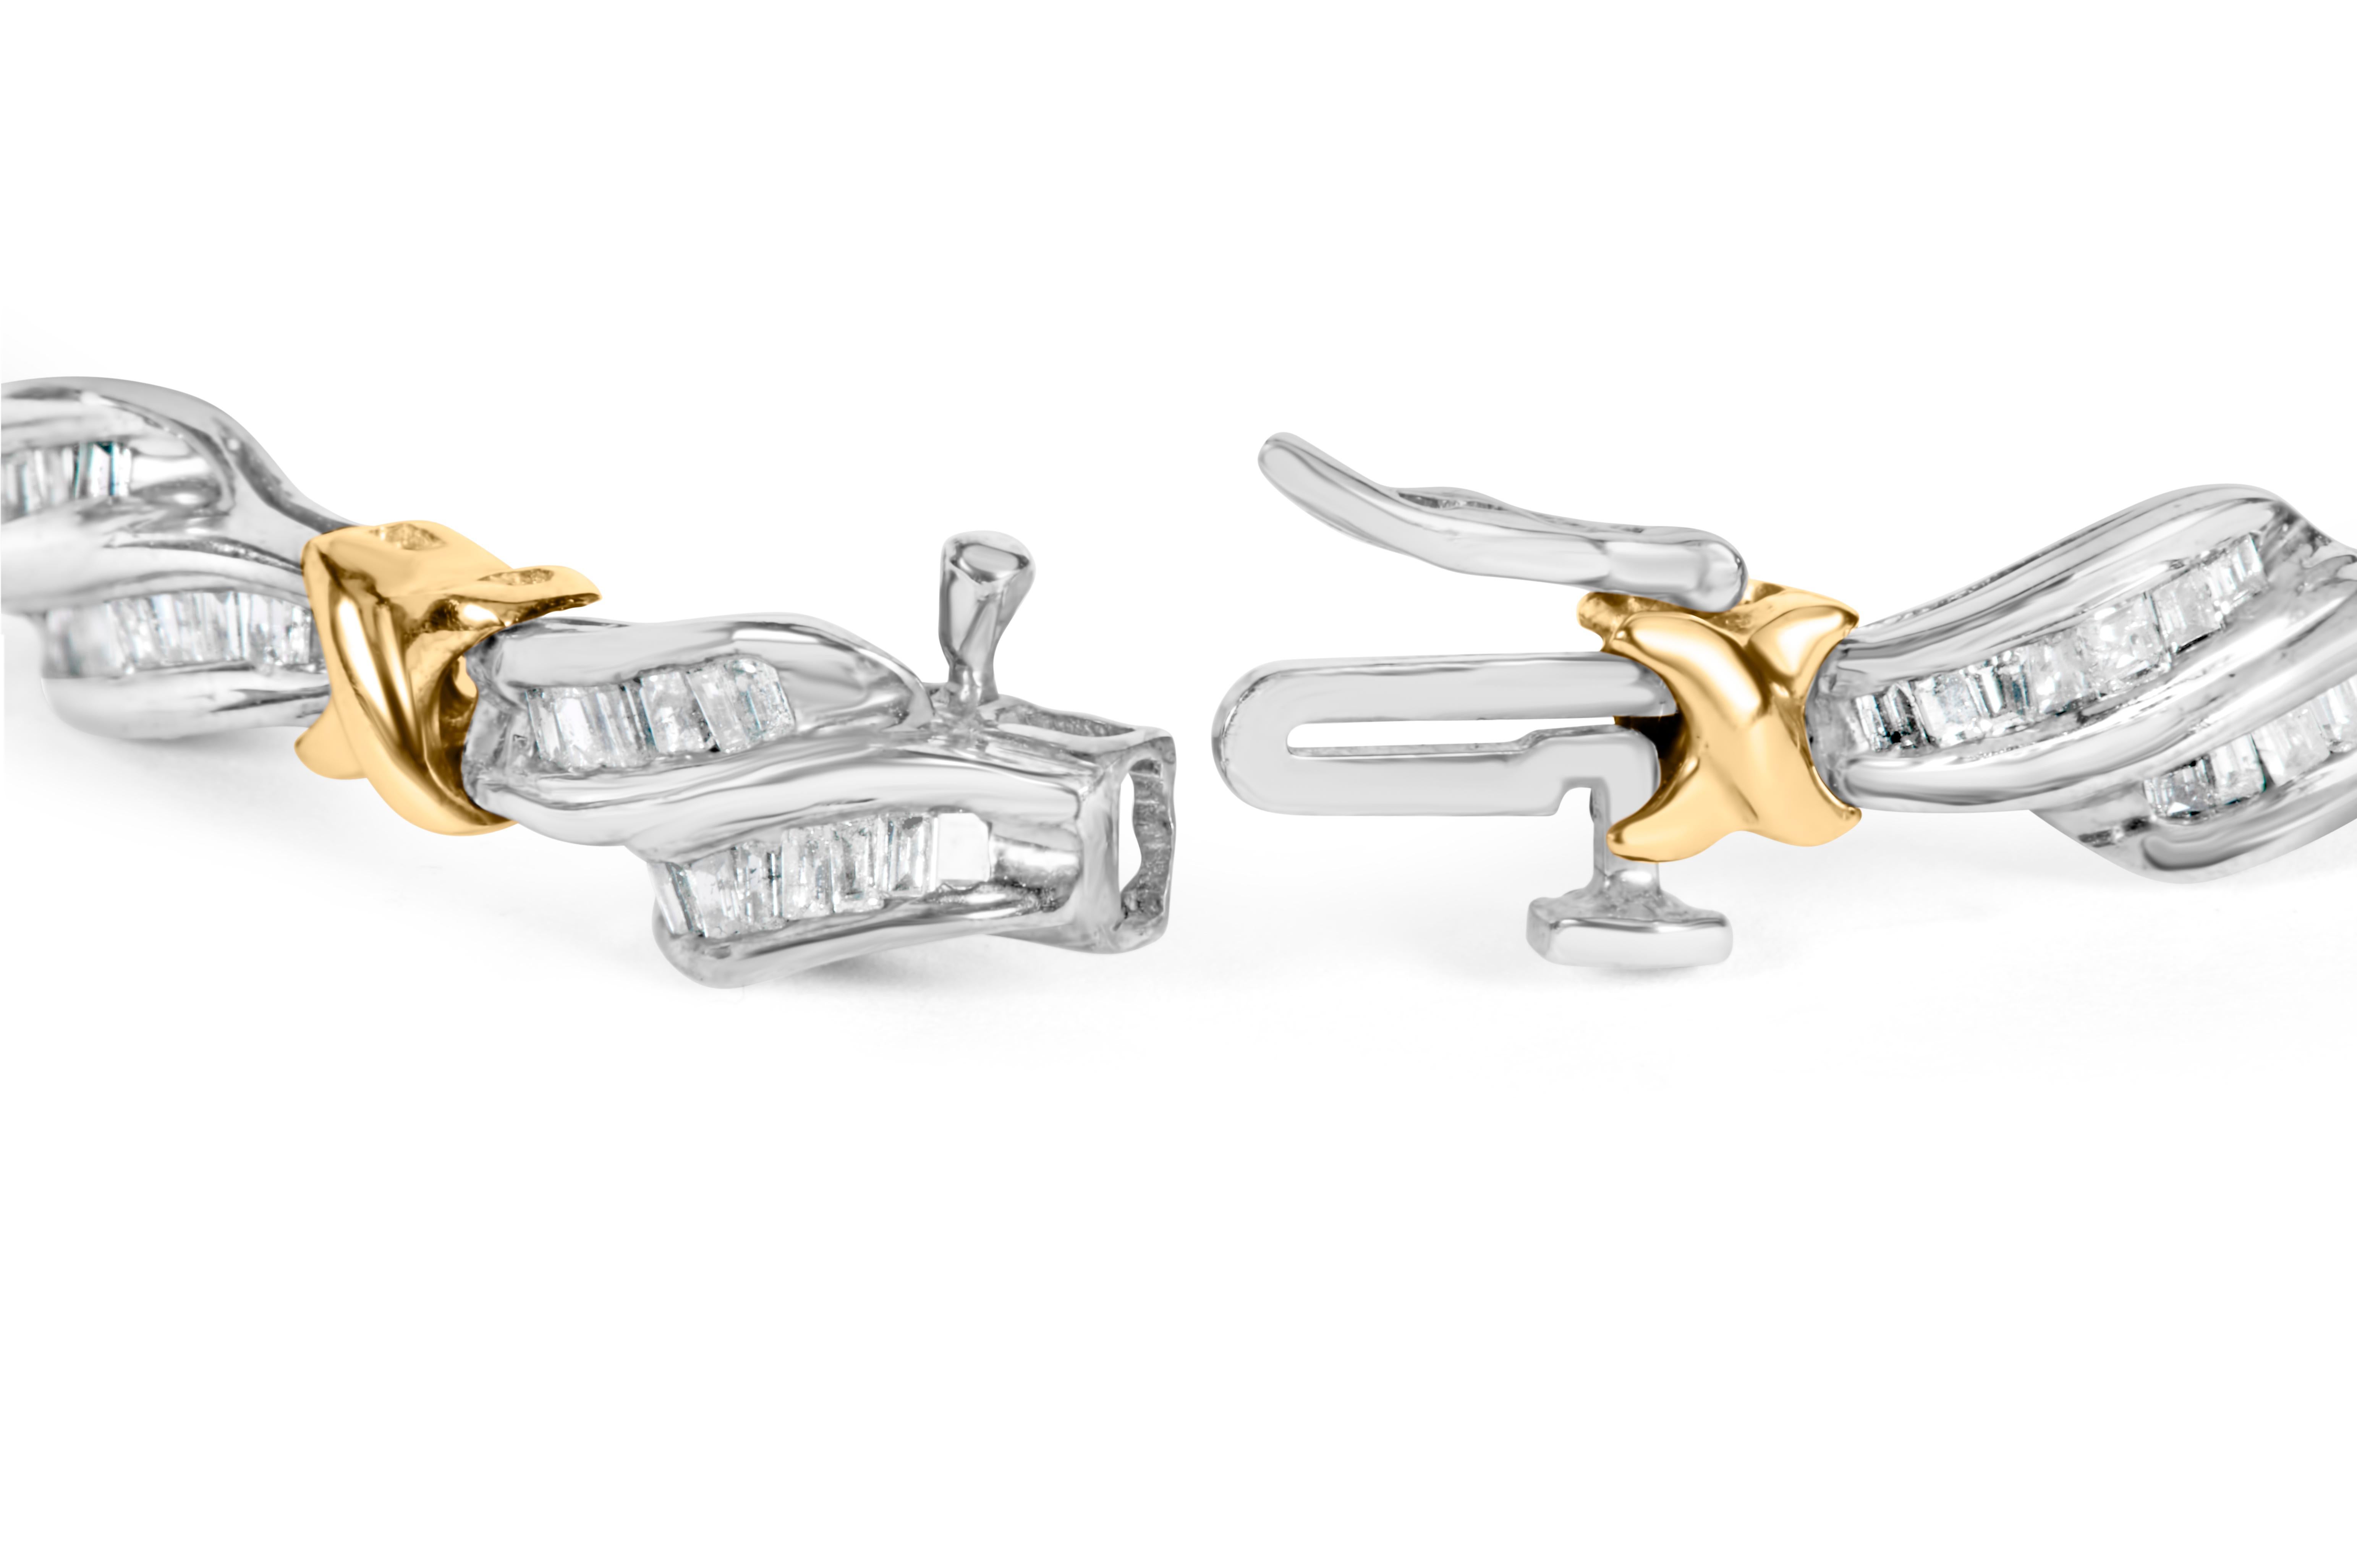 Lassen Sie sich von der luxuriösen Eleganz dieses atemberaubenden Diamantarmbands verzaubern. Dieses aus zweifarbigem 10-karätigem Gold gefertigte Schmuckstück besticht durch sein einzigartiges Flecht- und 